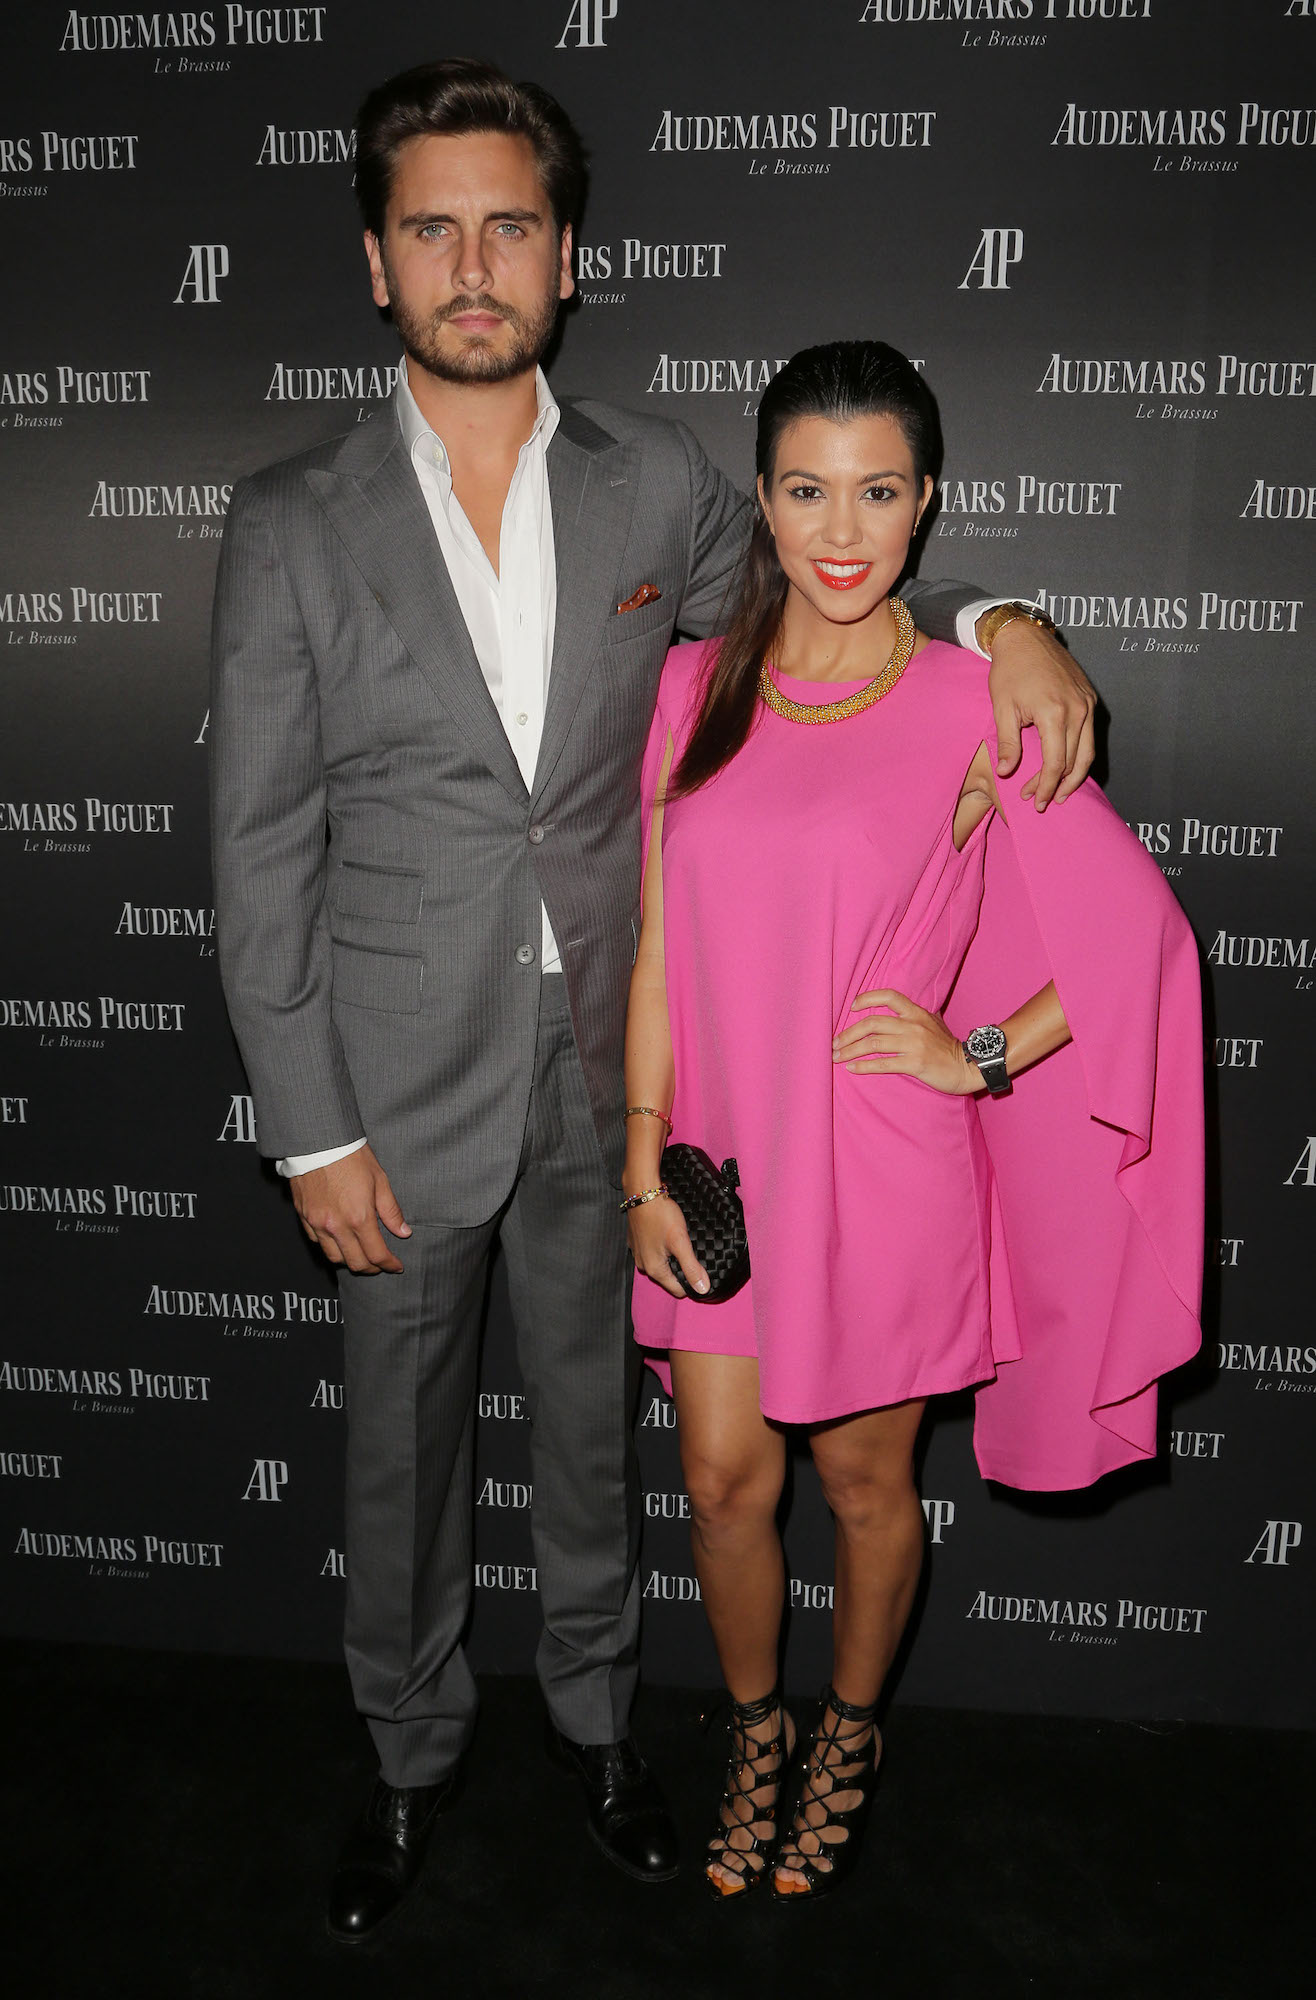 Scott Disick and Kourtney Kardashian attending the launch of new watch for Audemars Piguet 